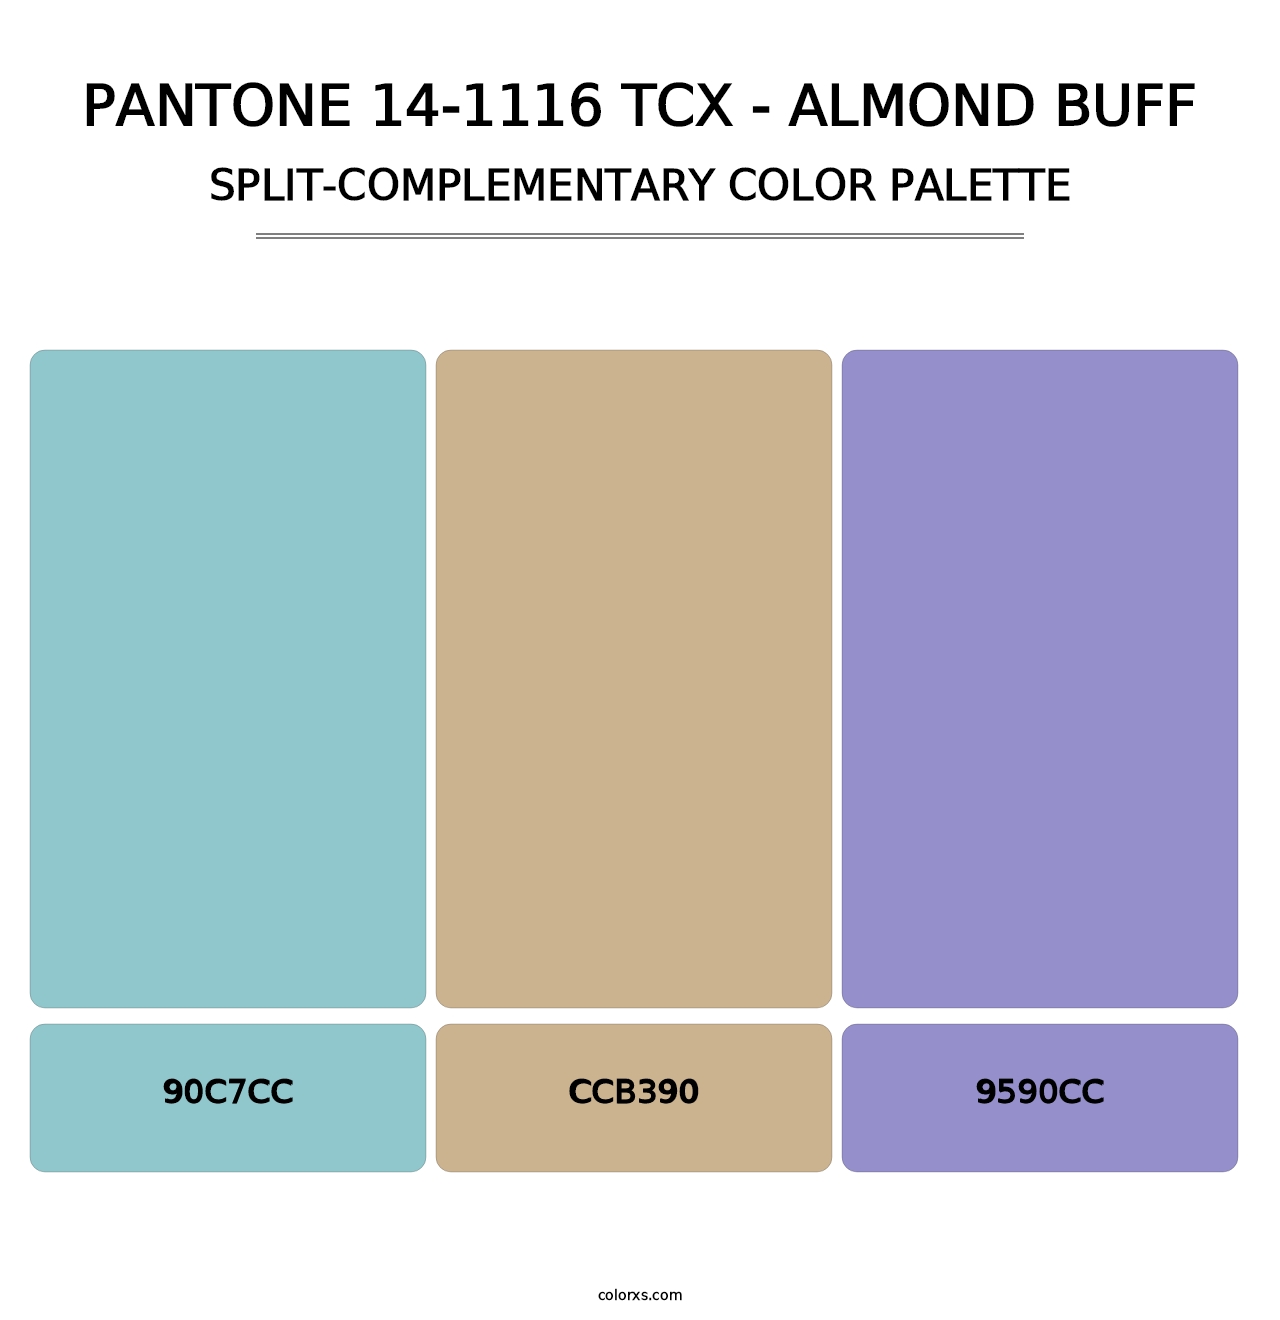 PANTONE 14-1116 TCX - Almond Buff - Split-Complementary Color Palette